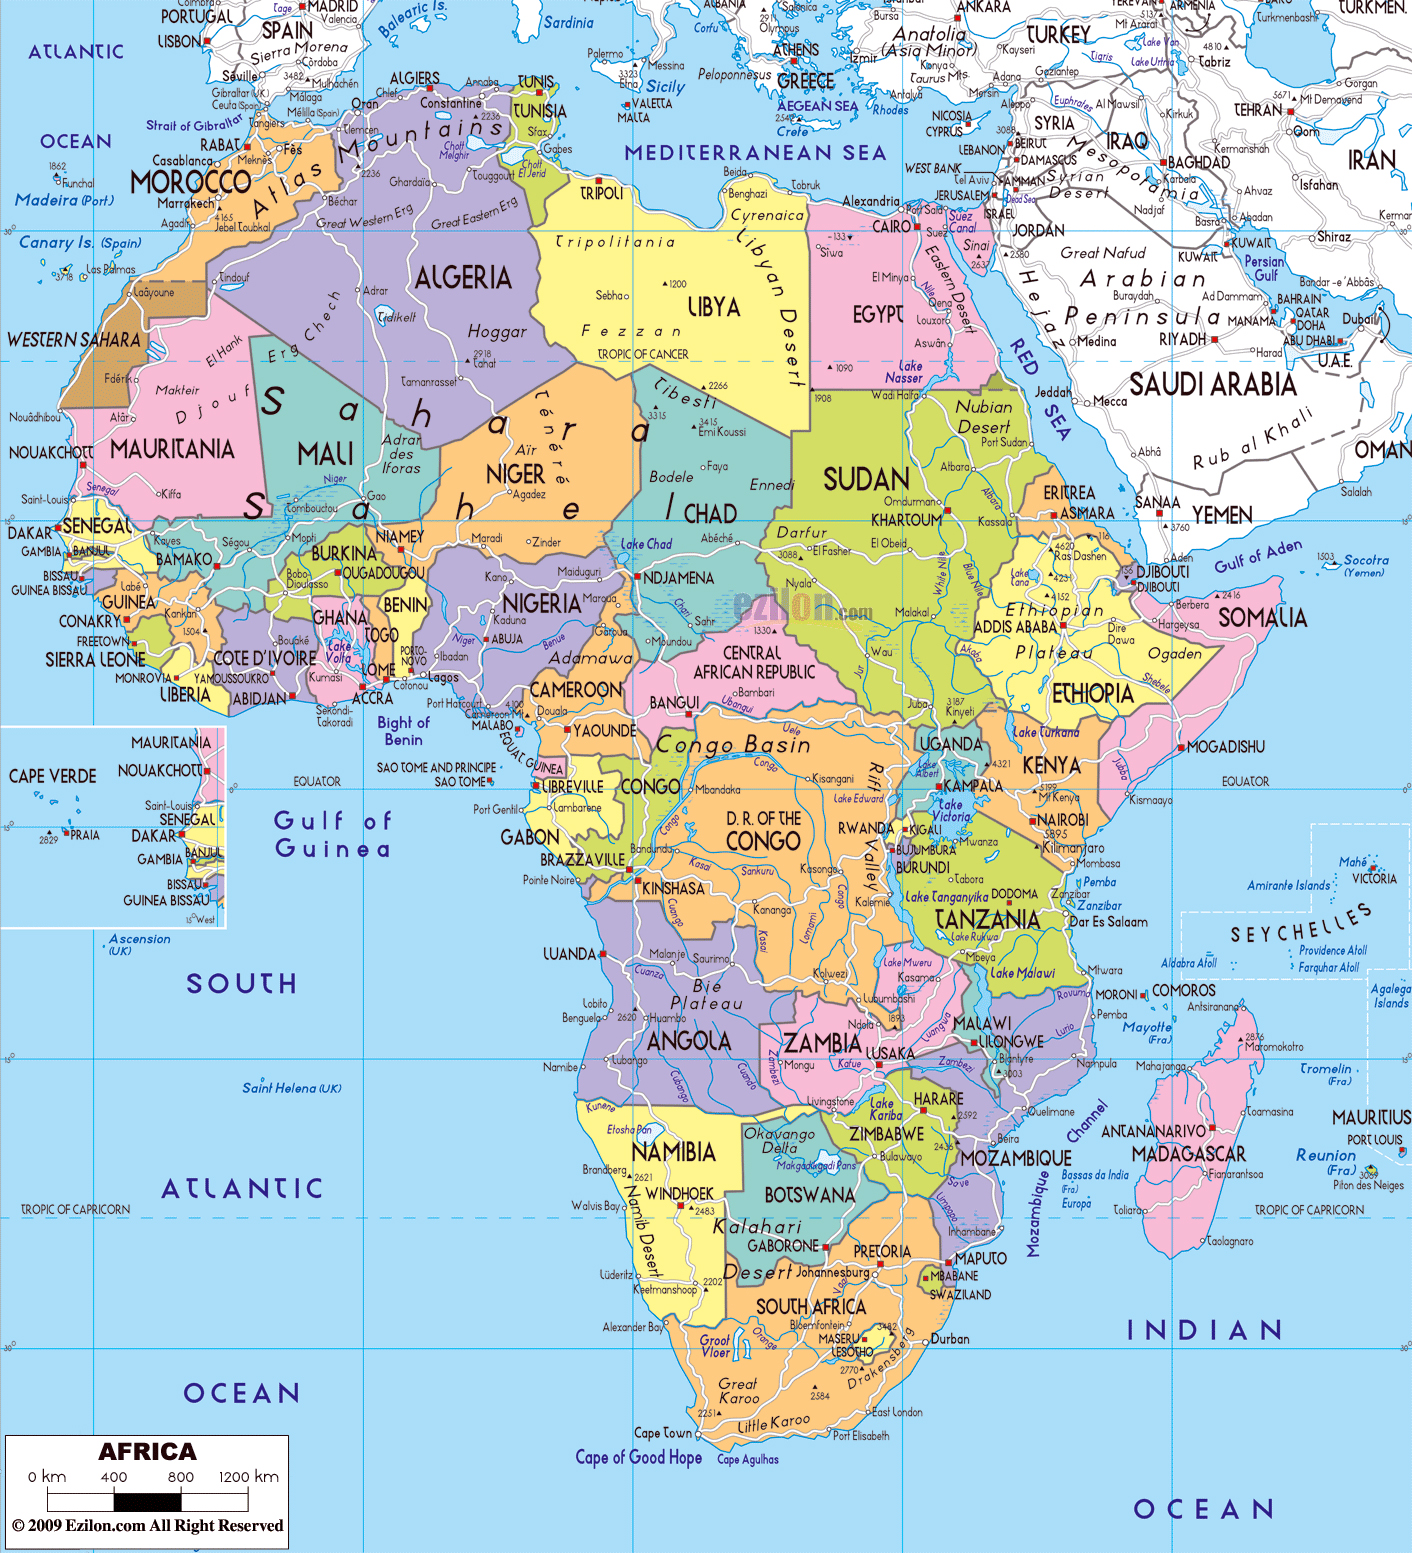 mapa-politico-grande-de-africa-con-las-carreteras-principales-las-capitales-y-principales-ciudades.jpg